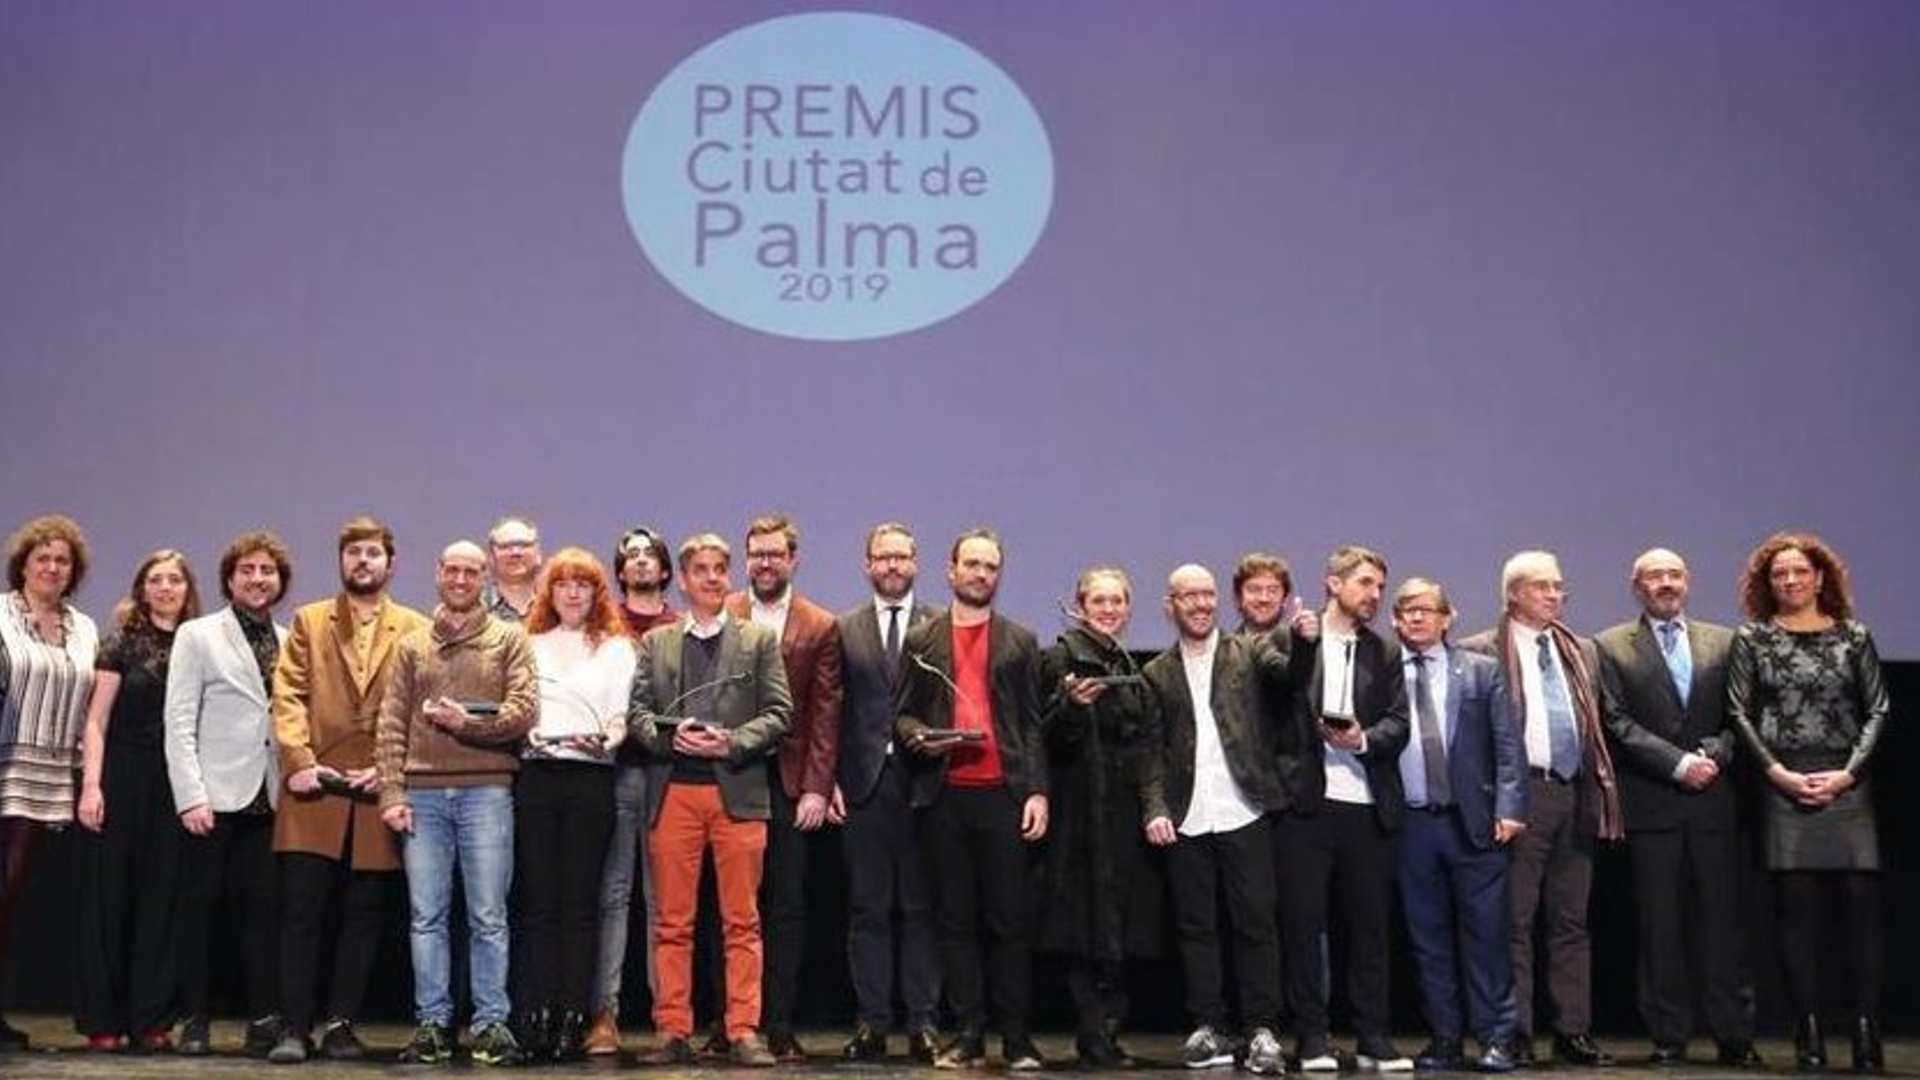 Entrega de los premios Ciutat Palma en la edición de 2019 con el alcalde de Palma, José Hila, en el centro de la imagen.